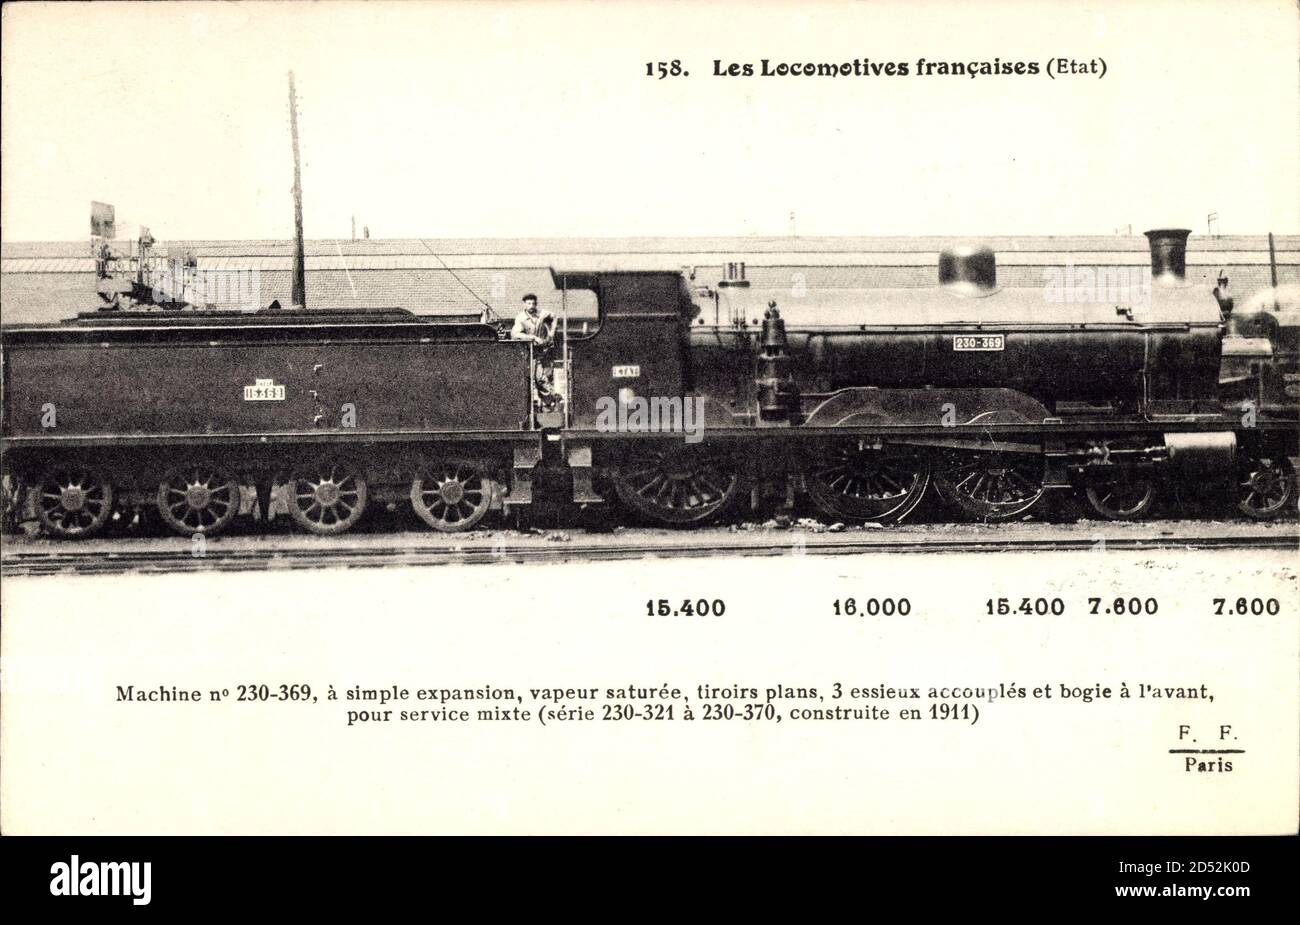 Französische Eisenbahn, Chemin de fer, Locomotive, Etat, 15400 | usage worldwide Stock Photo